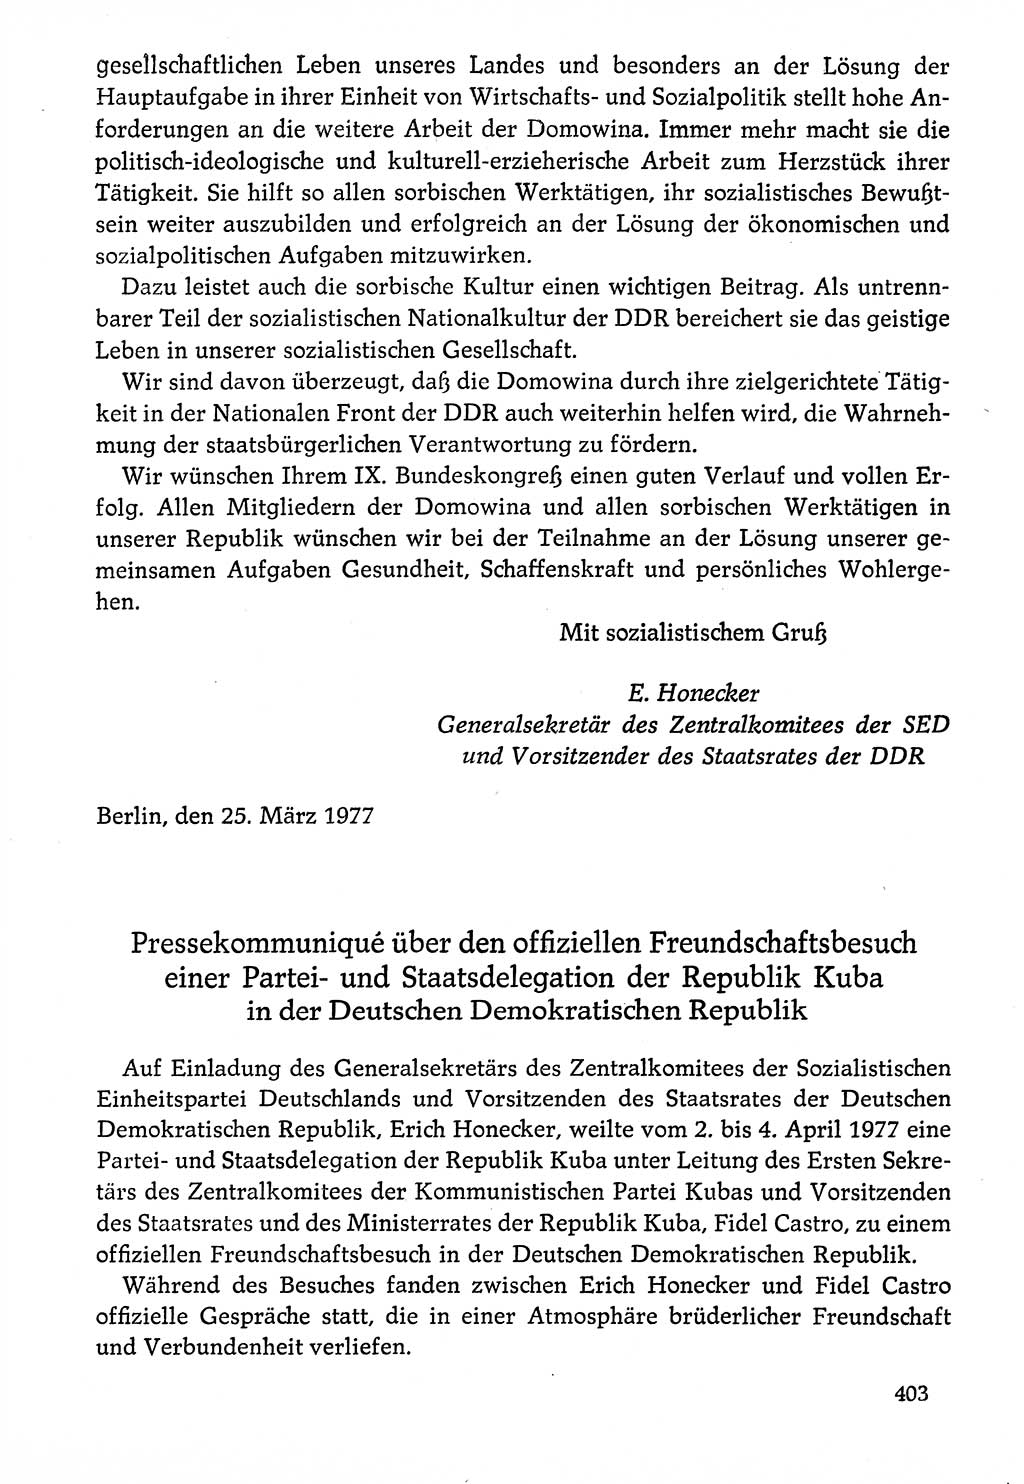 Dokumente der Sozialistischen Einheitspartei Deutschlands (SED) [Deutsche Demokratische Republik (DDR)] 1976-1977, Seite 403 (Dok. SED DDR 1976-1977, S. 403)